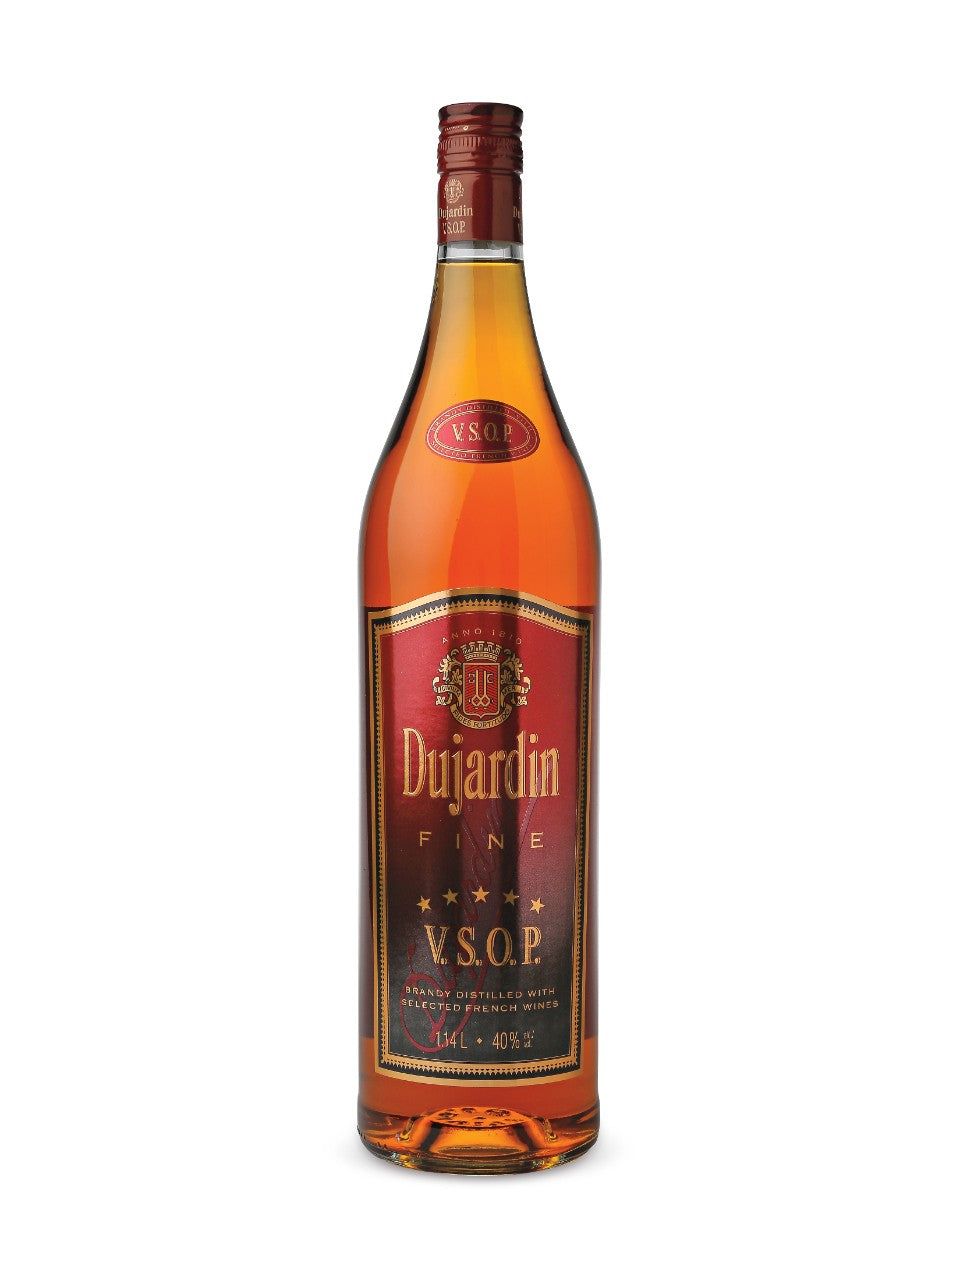 Dujardin VSOP Brandy 1140 mL bottle